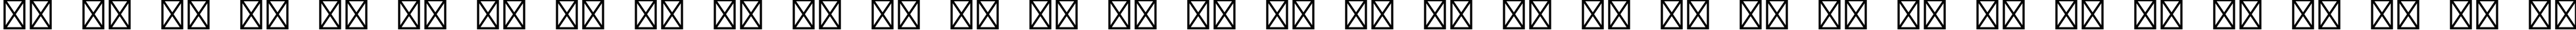 Пример написания русского алфавита шрифтом Orator Std Medium